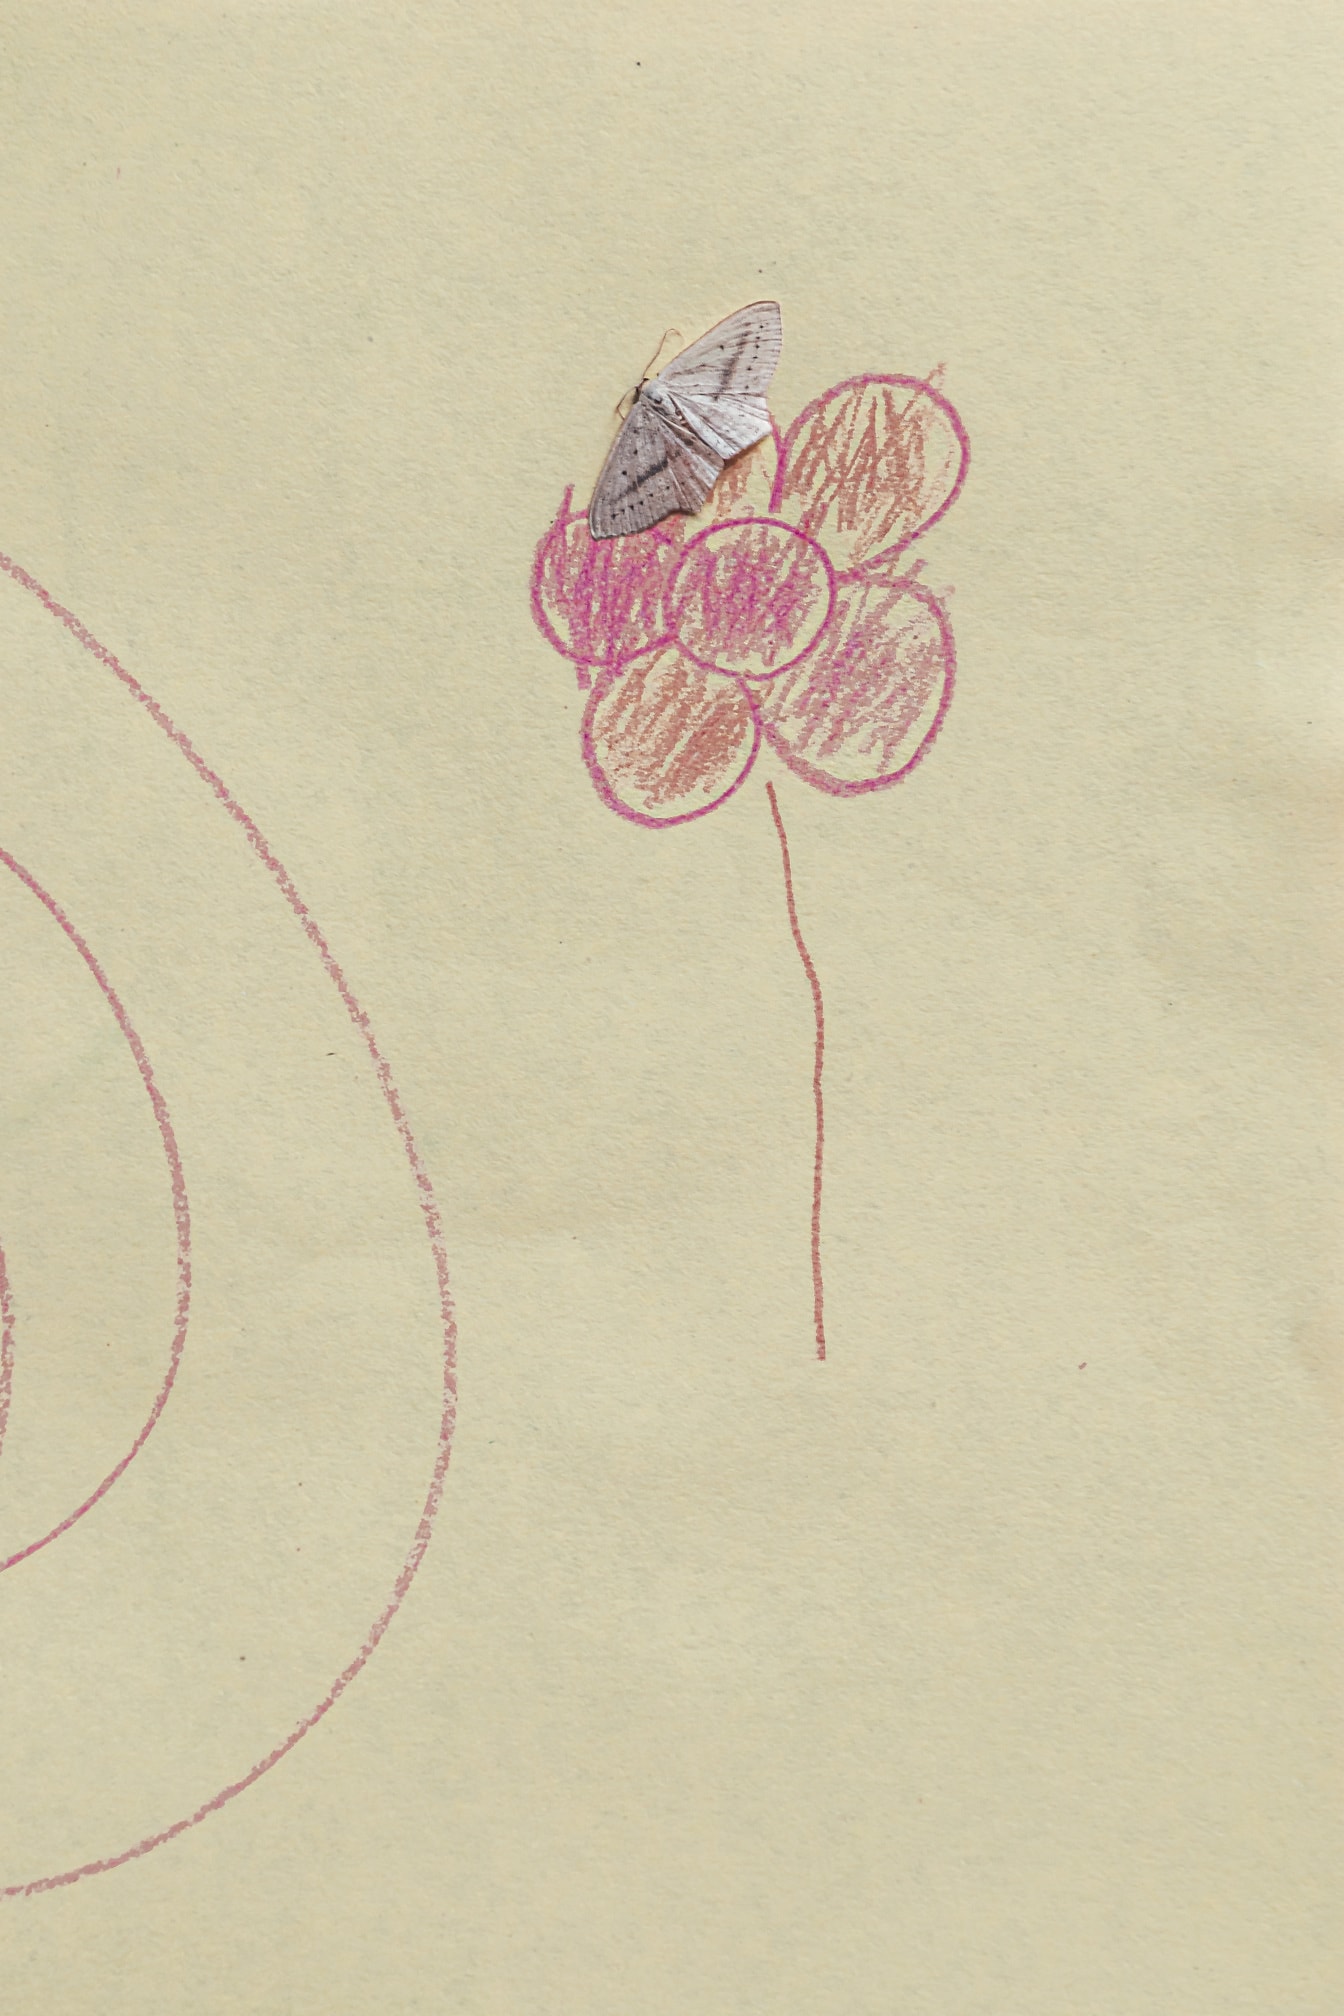 Pembemsi çiçek çizimi ile kağıt üzerinde küçük beyaz kelebek